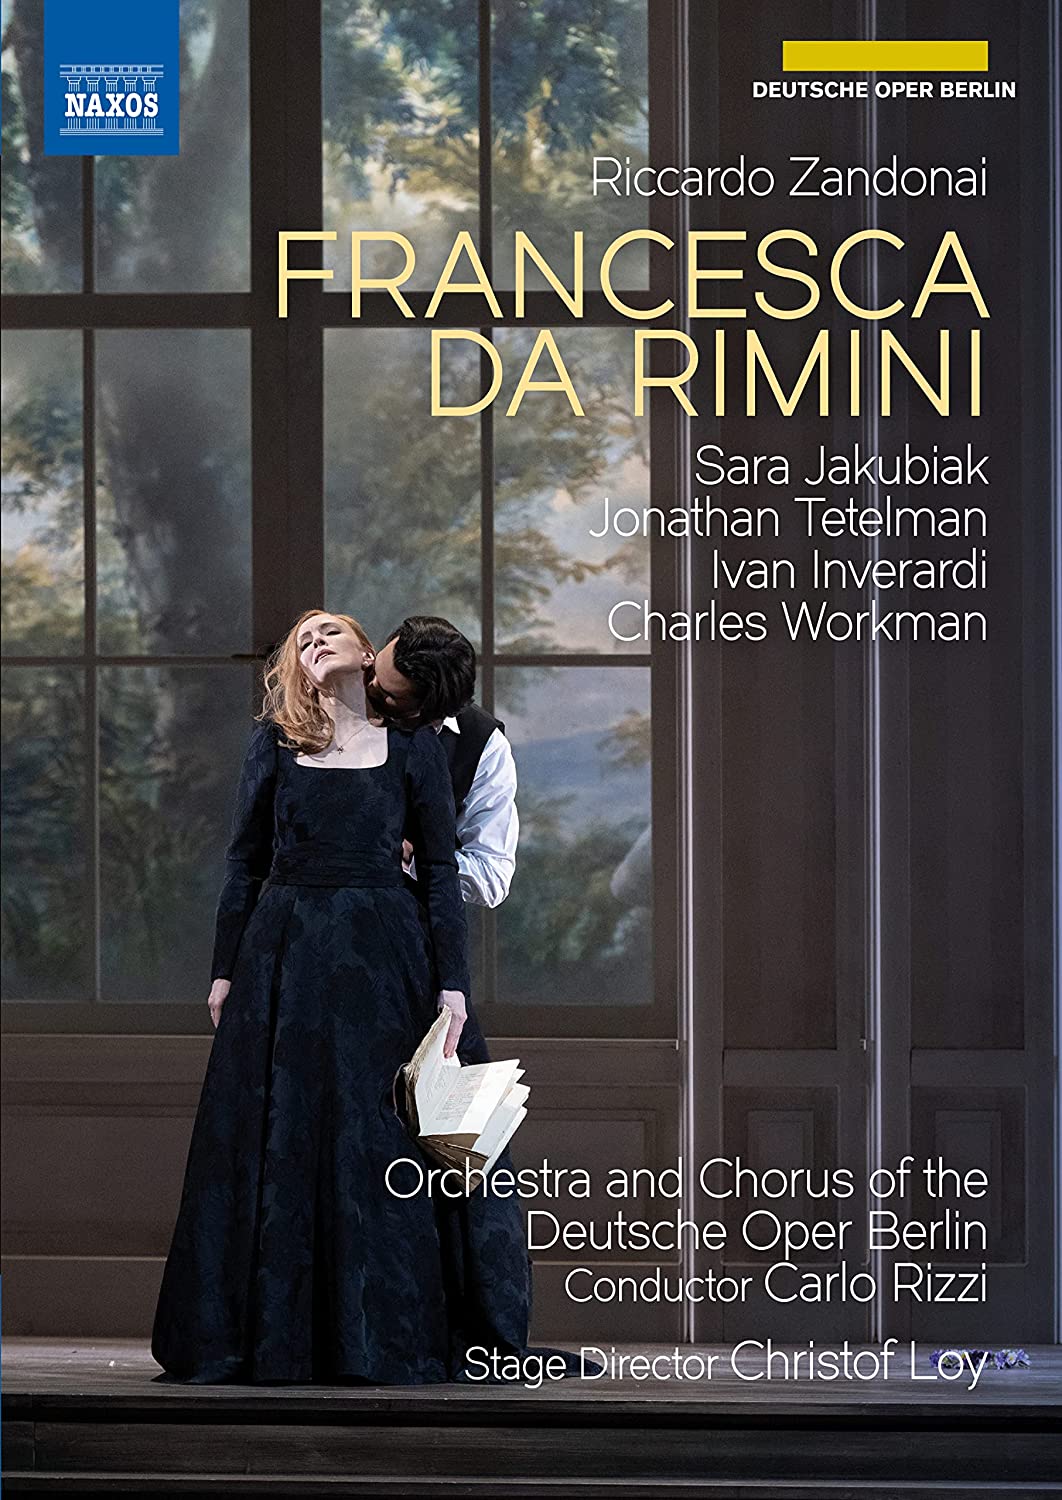 Music Dvd Riccardo Zandonai - Francesca Da Rimini NUOVO SIGILLATO, EDIZIONE DEL 06/01/2022 SUBITO DISPONIBILE